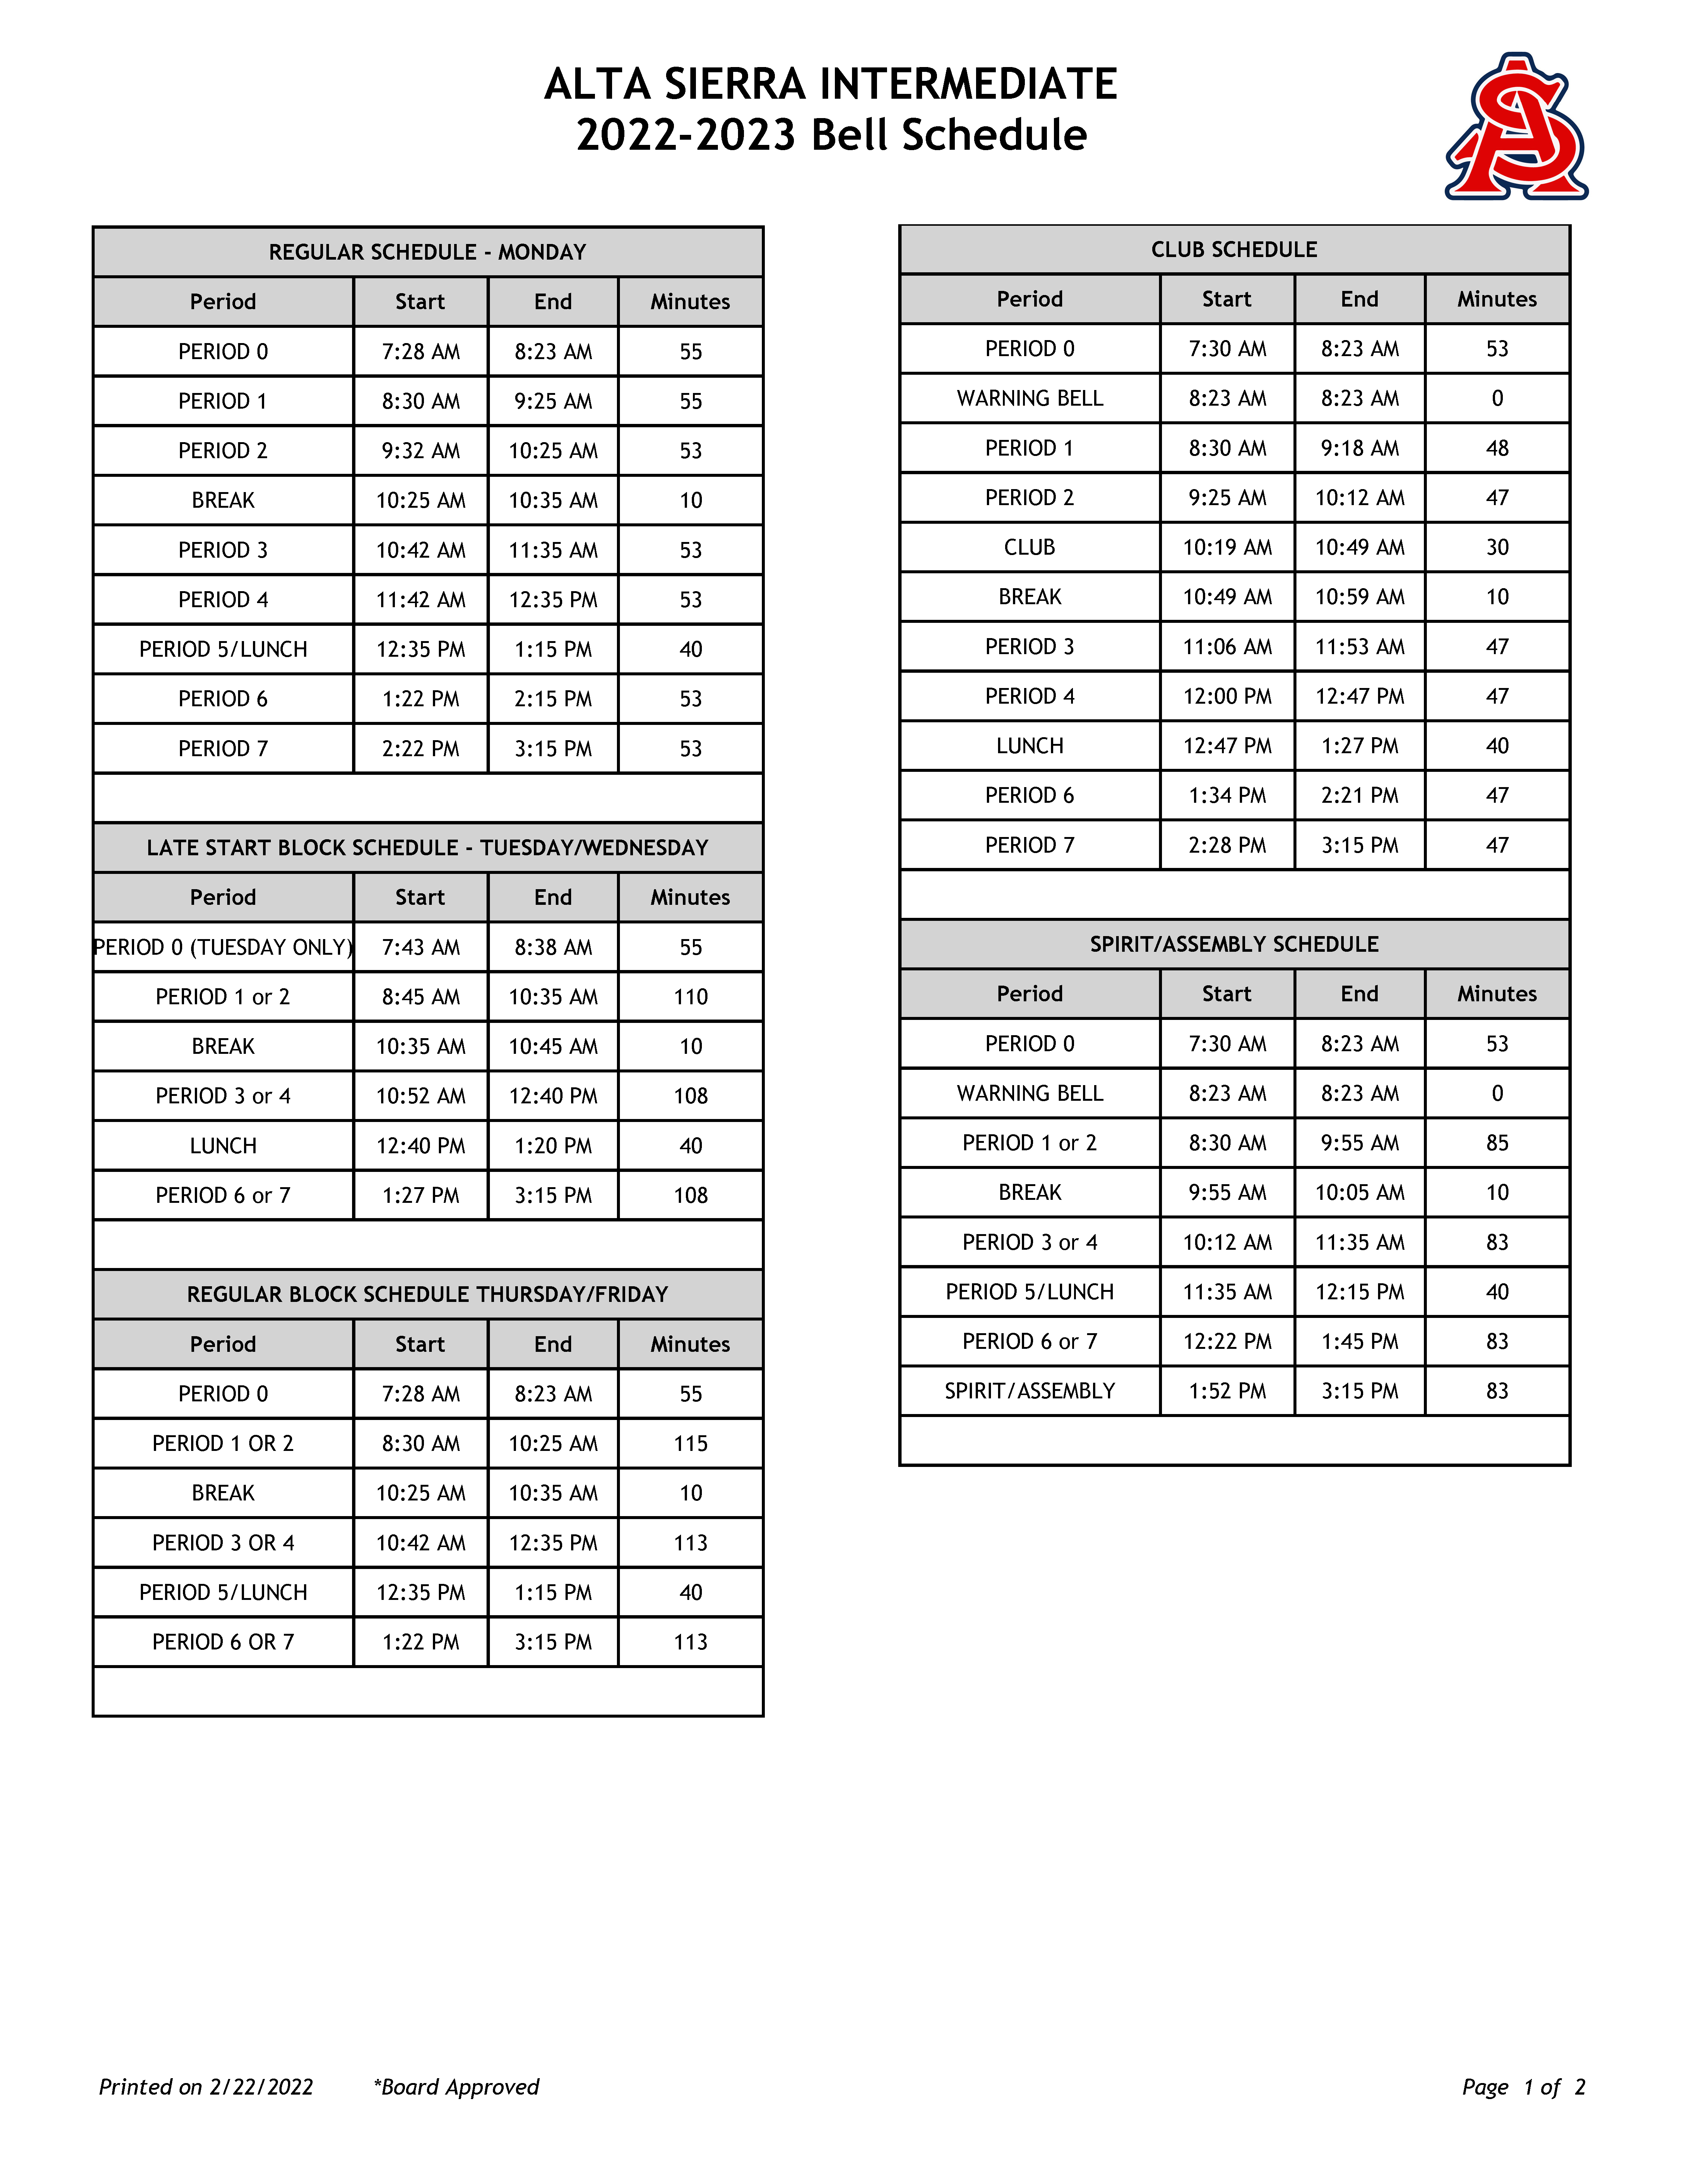 2022-23 Alta Sierra Bell Schedule 